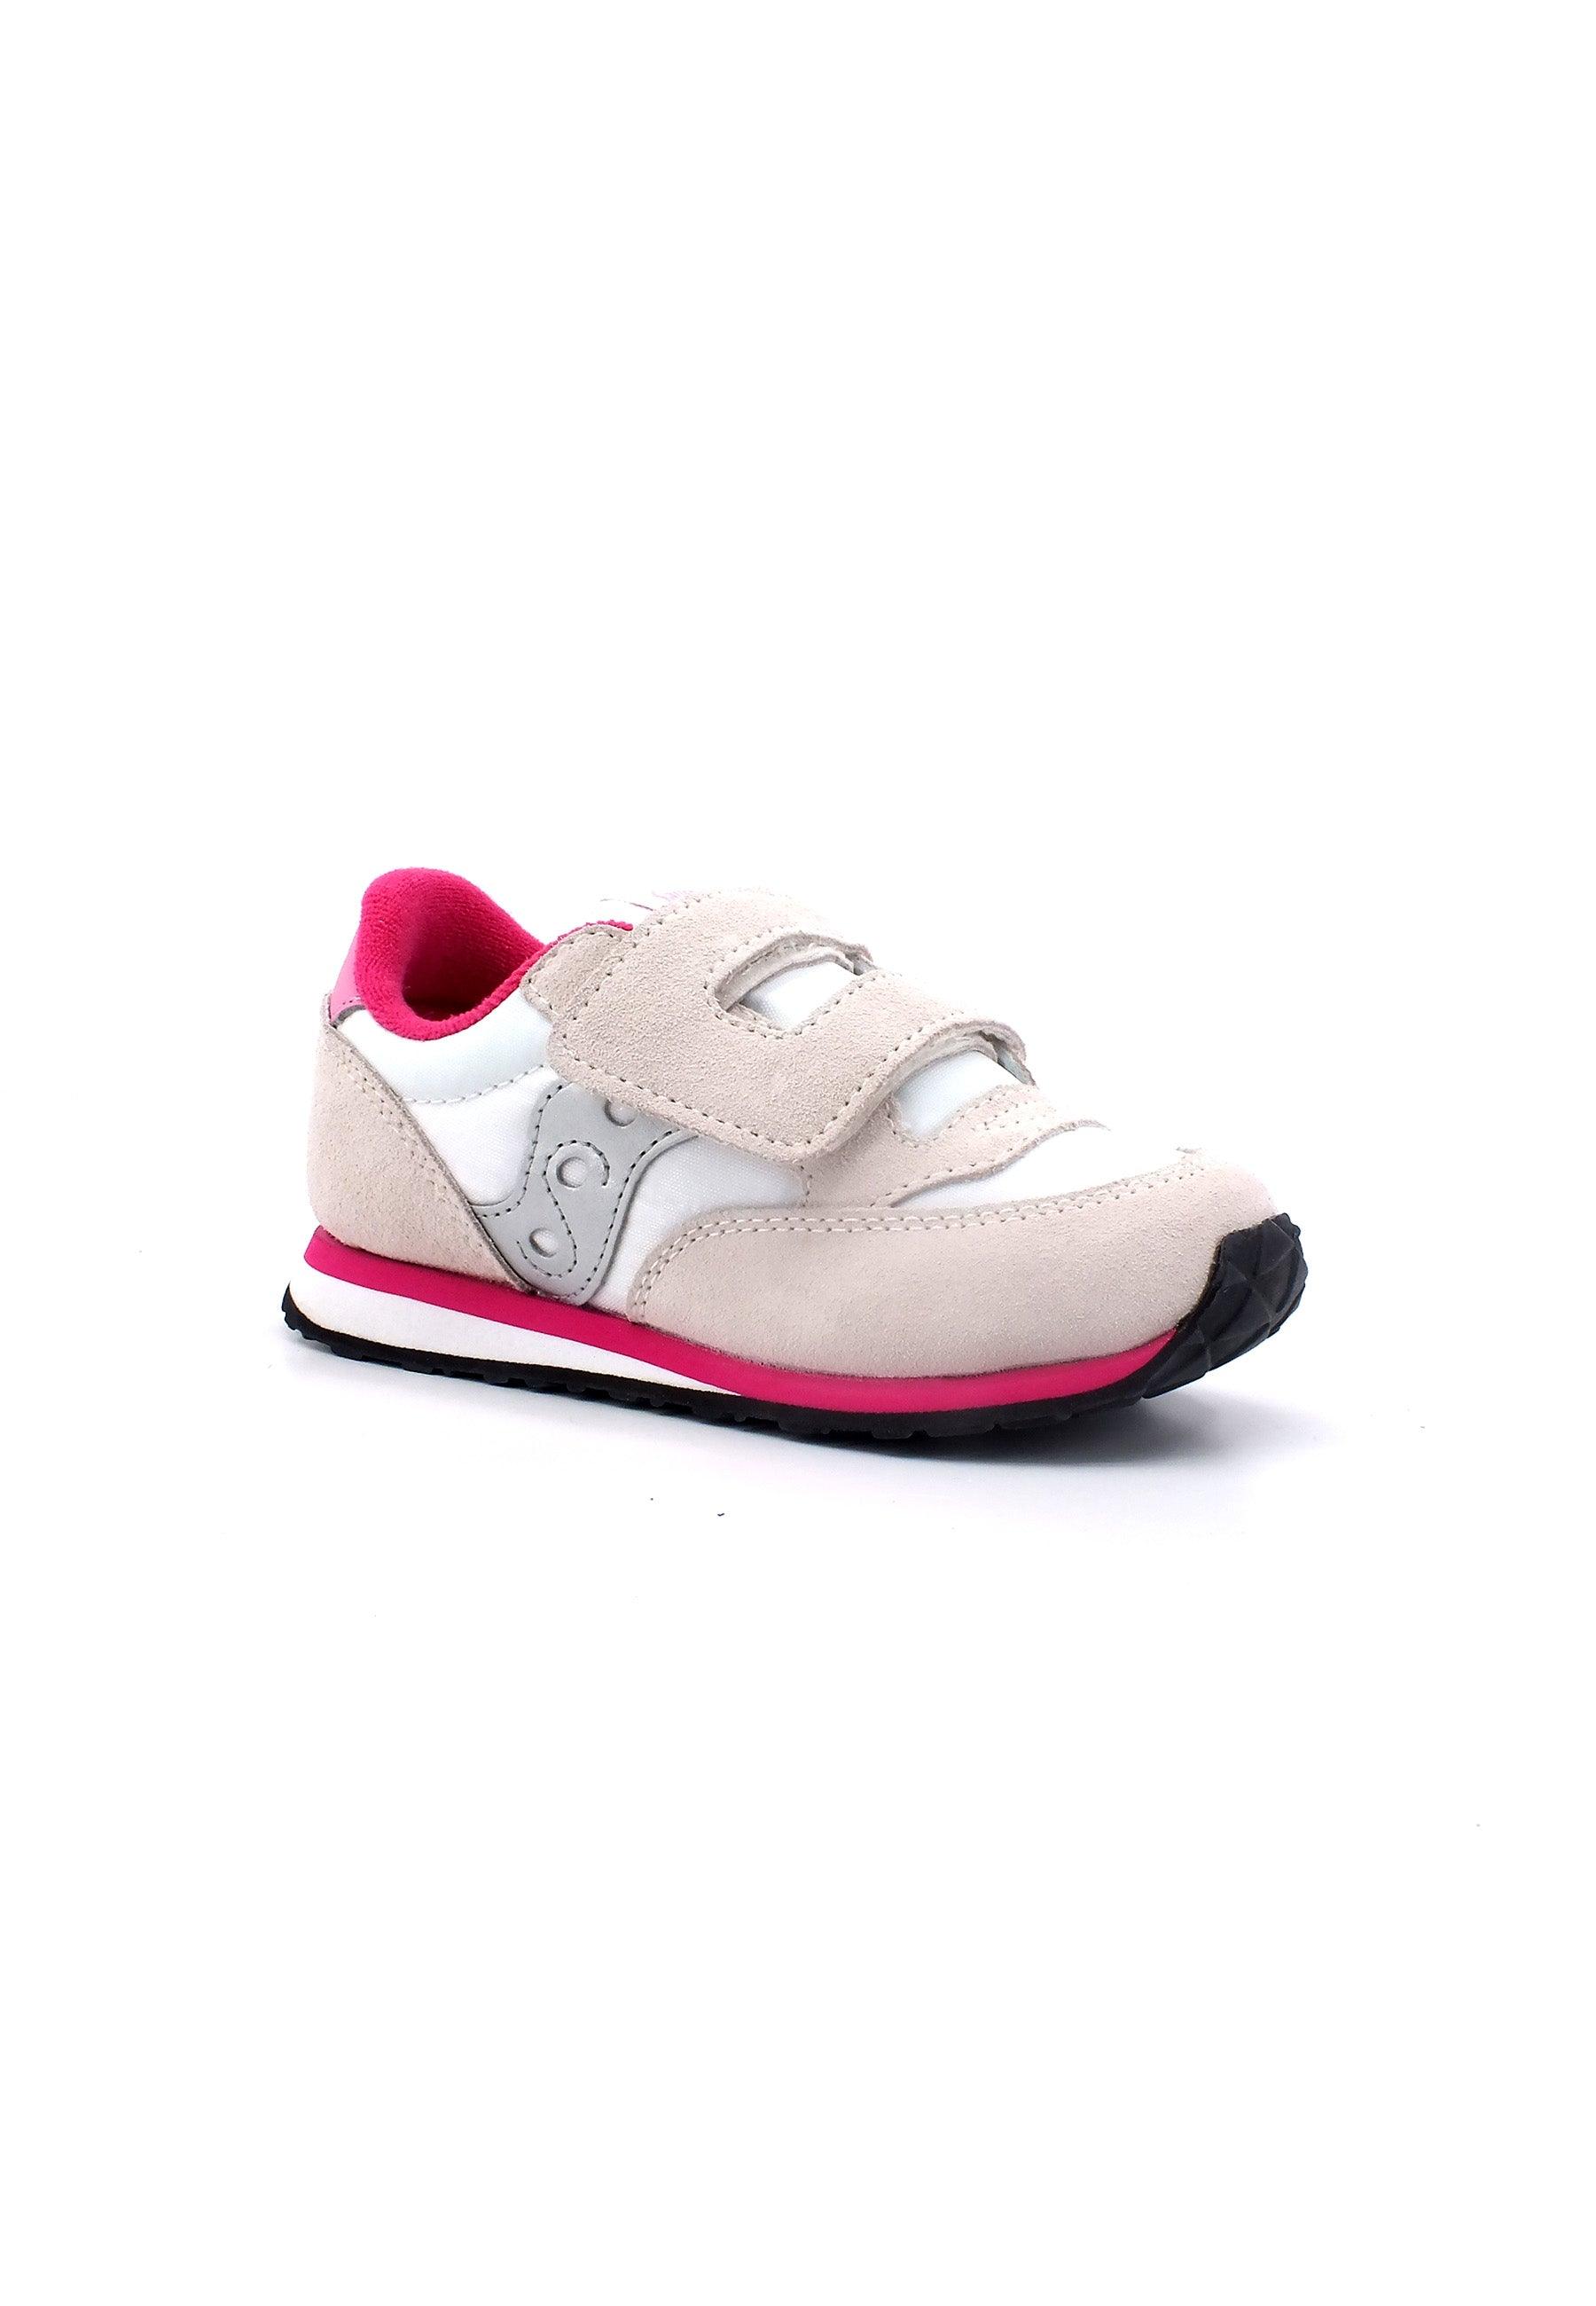 SAUCONY Baby Jazz Sneaker Bimbo White Silver Pink SL167024 - Sandrini Calzature e Abbigliamento